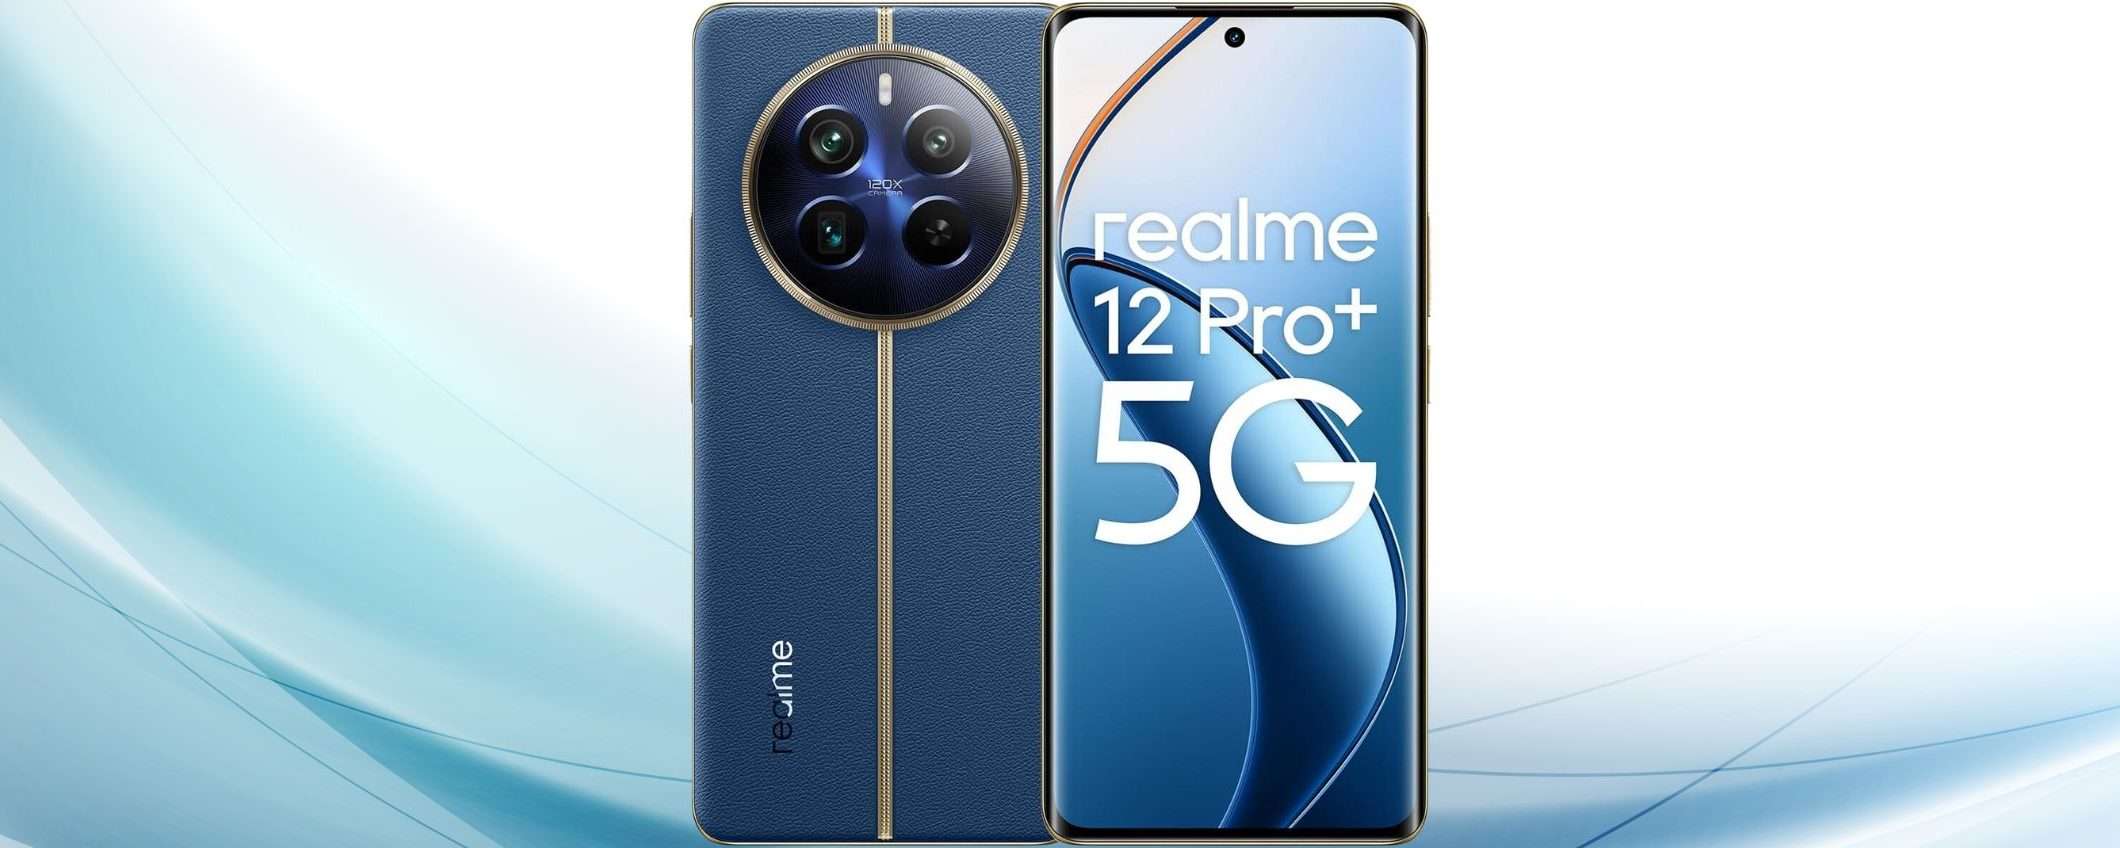 Il nuovo Realme 12 Pro+ 5G è in offerta su Amazon con un coupon